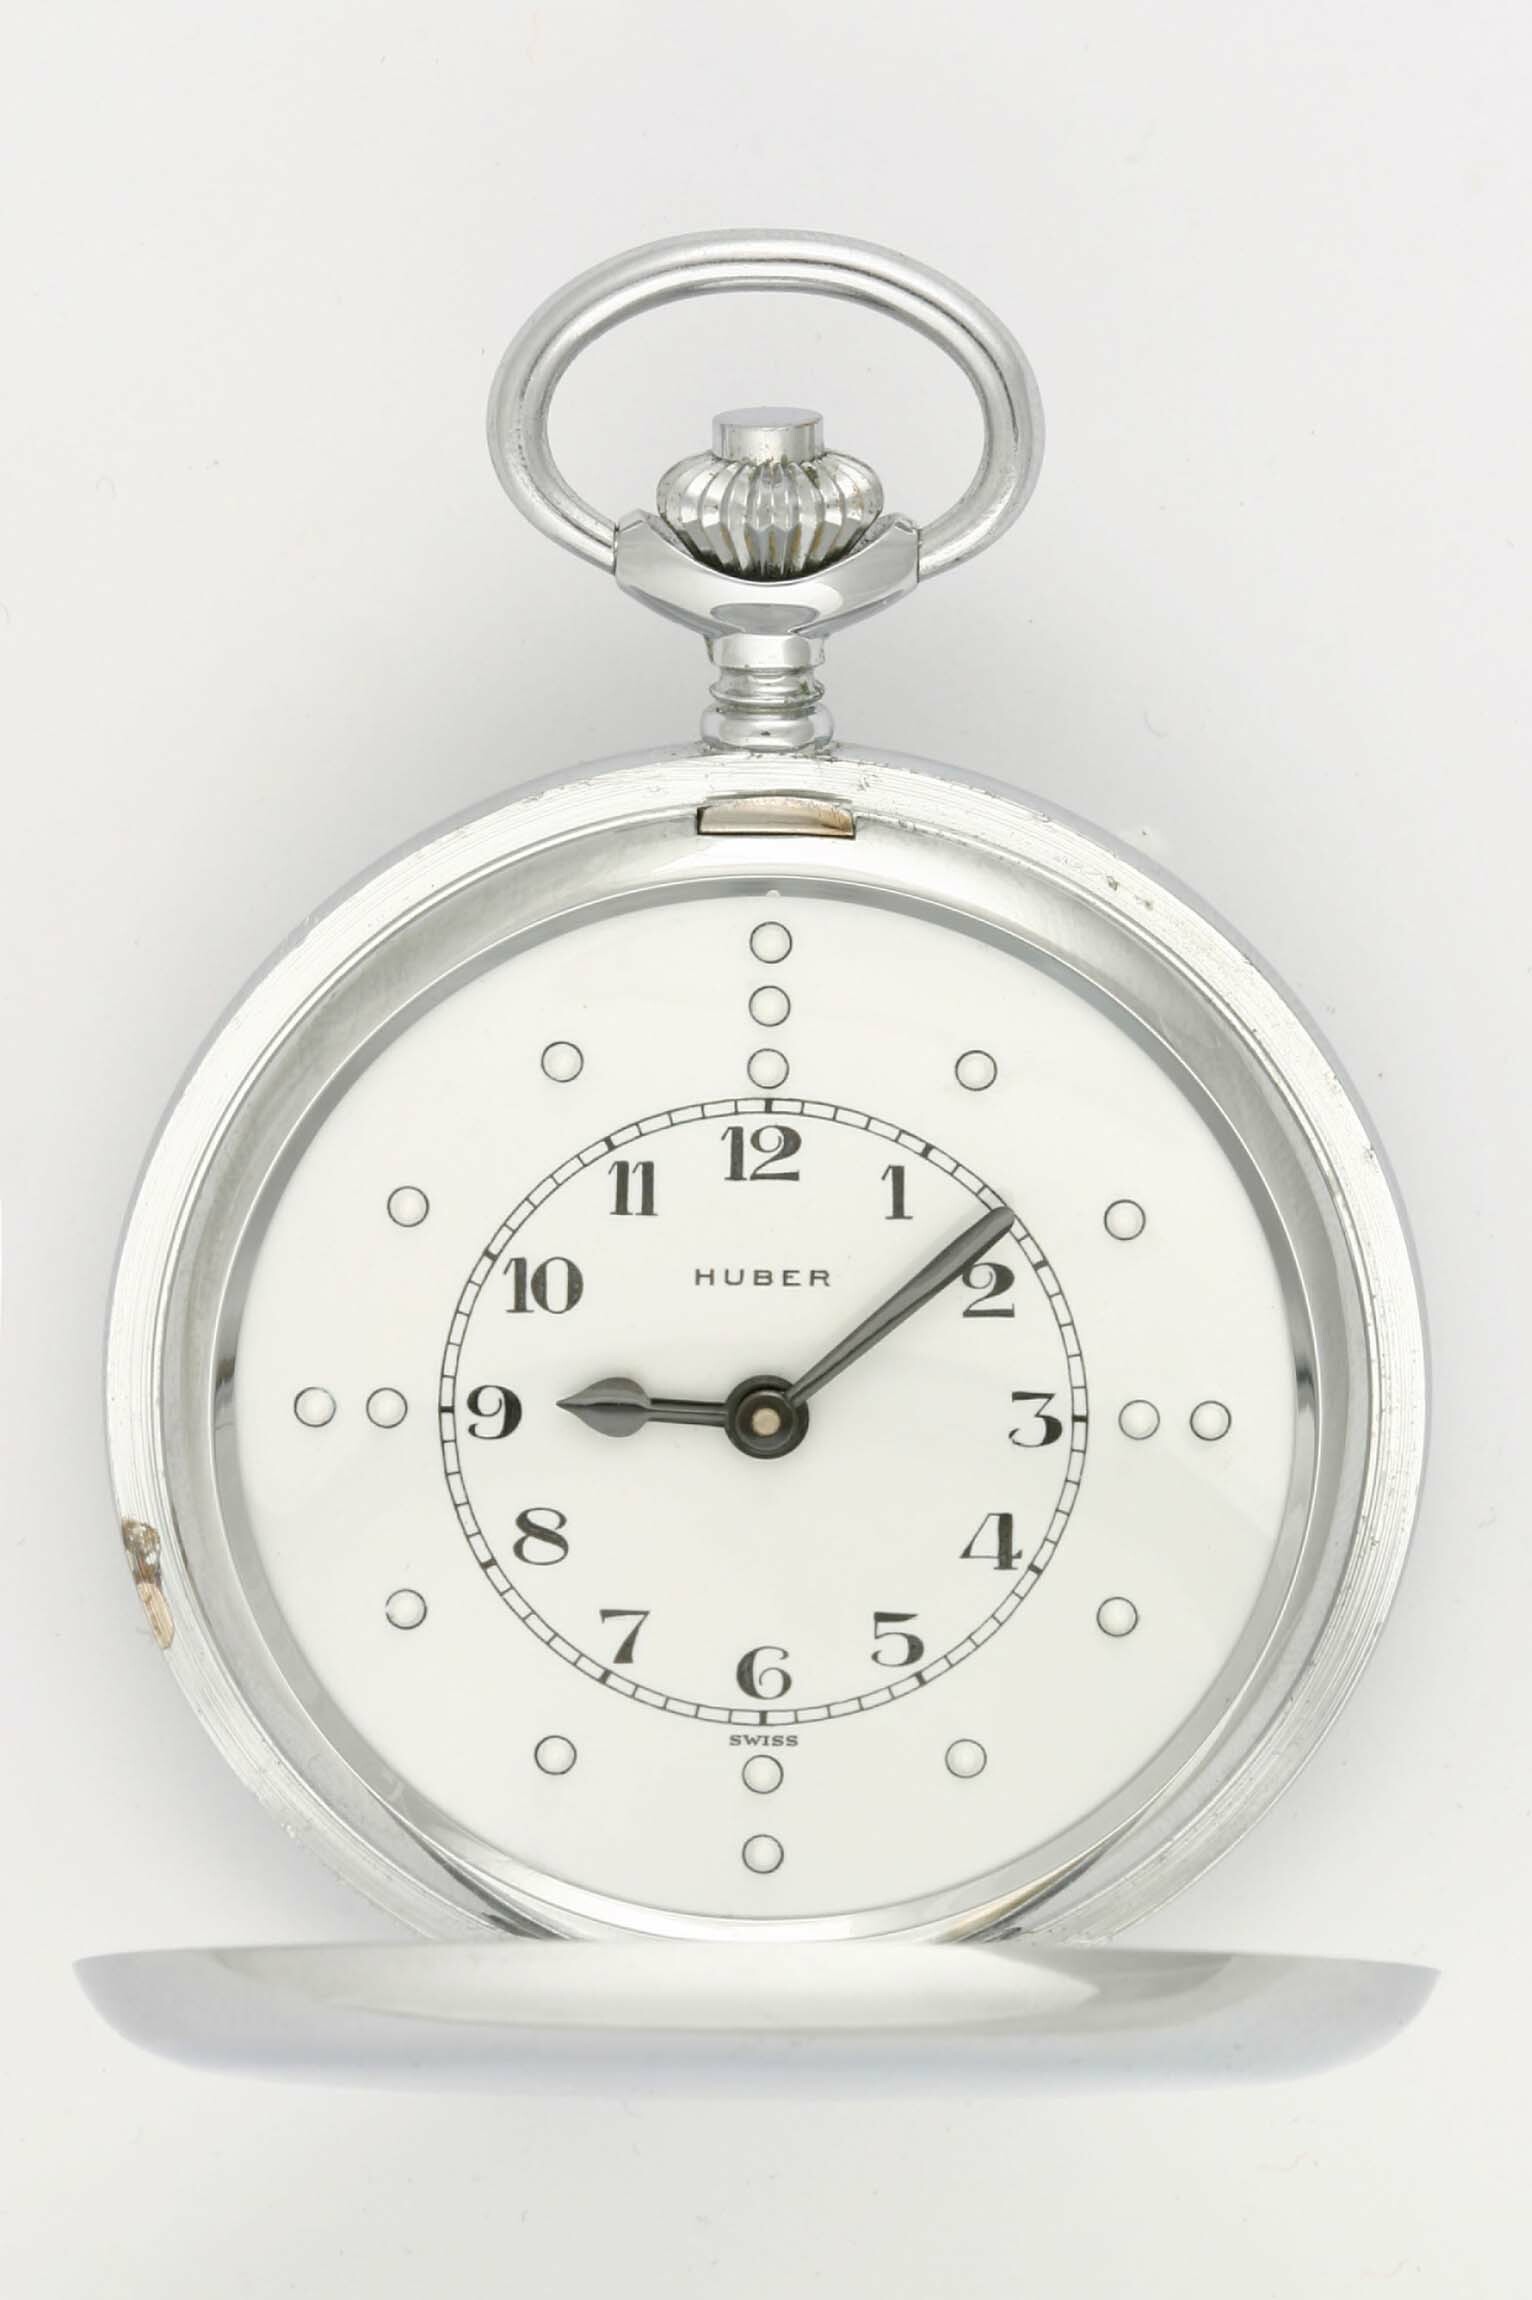 Blindentaschenuhr, Unitas für Huber, Schweiz, um 1960 (Deutsches Uhrenmuseum CC BY-SA)